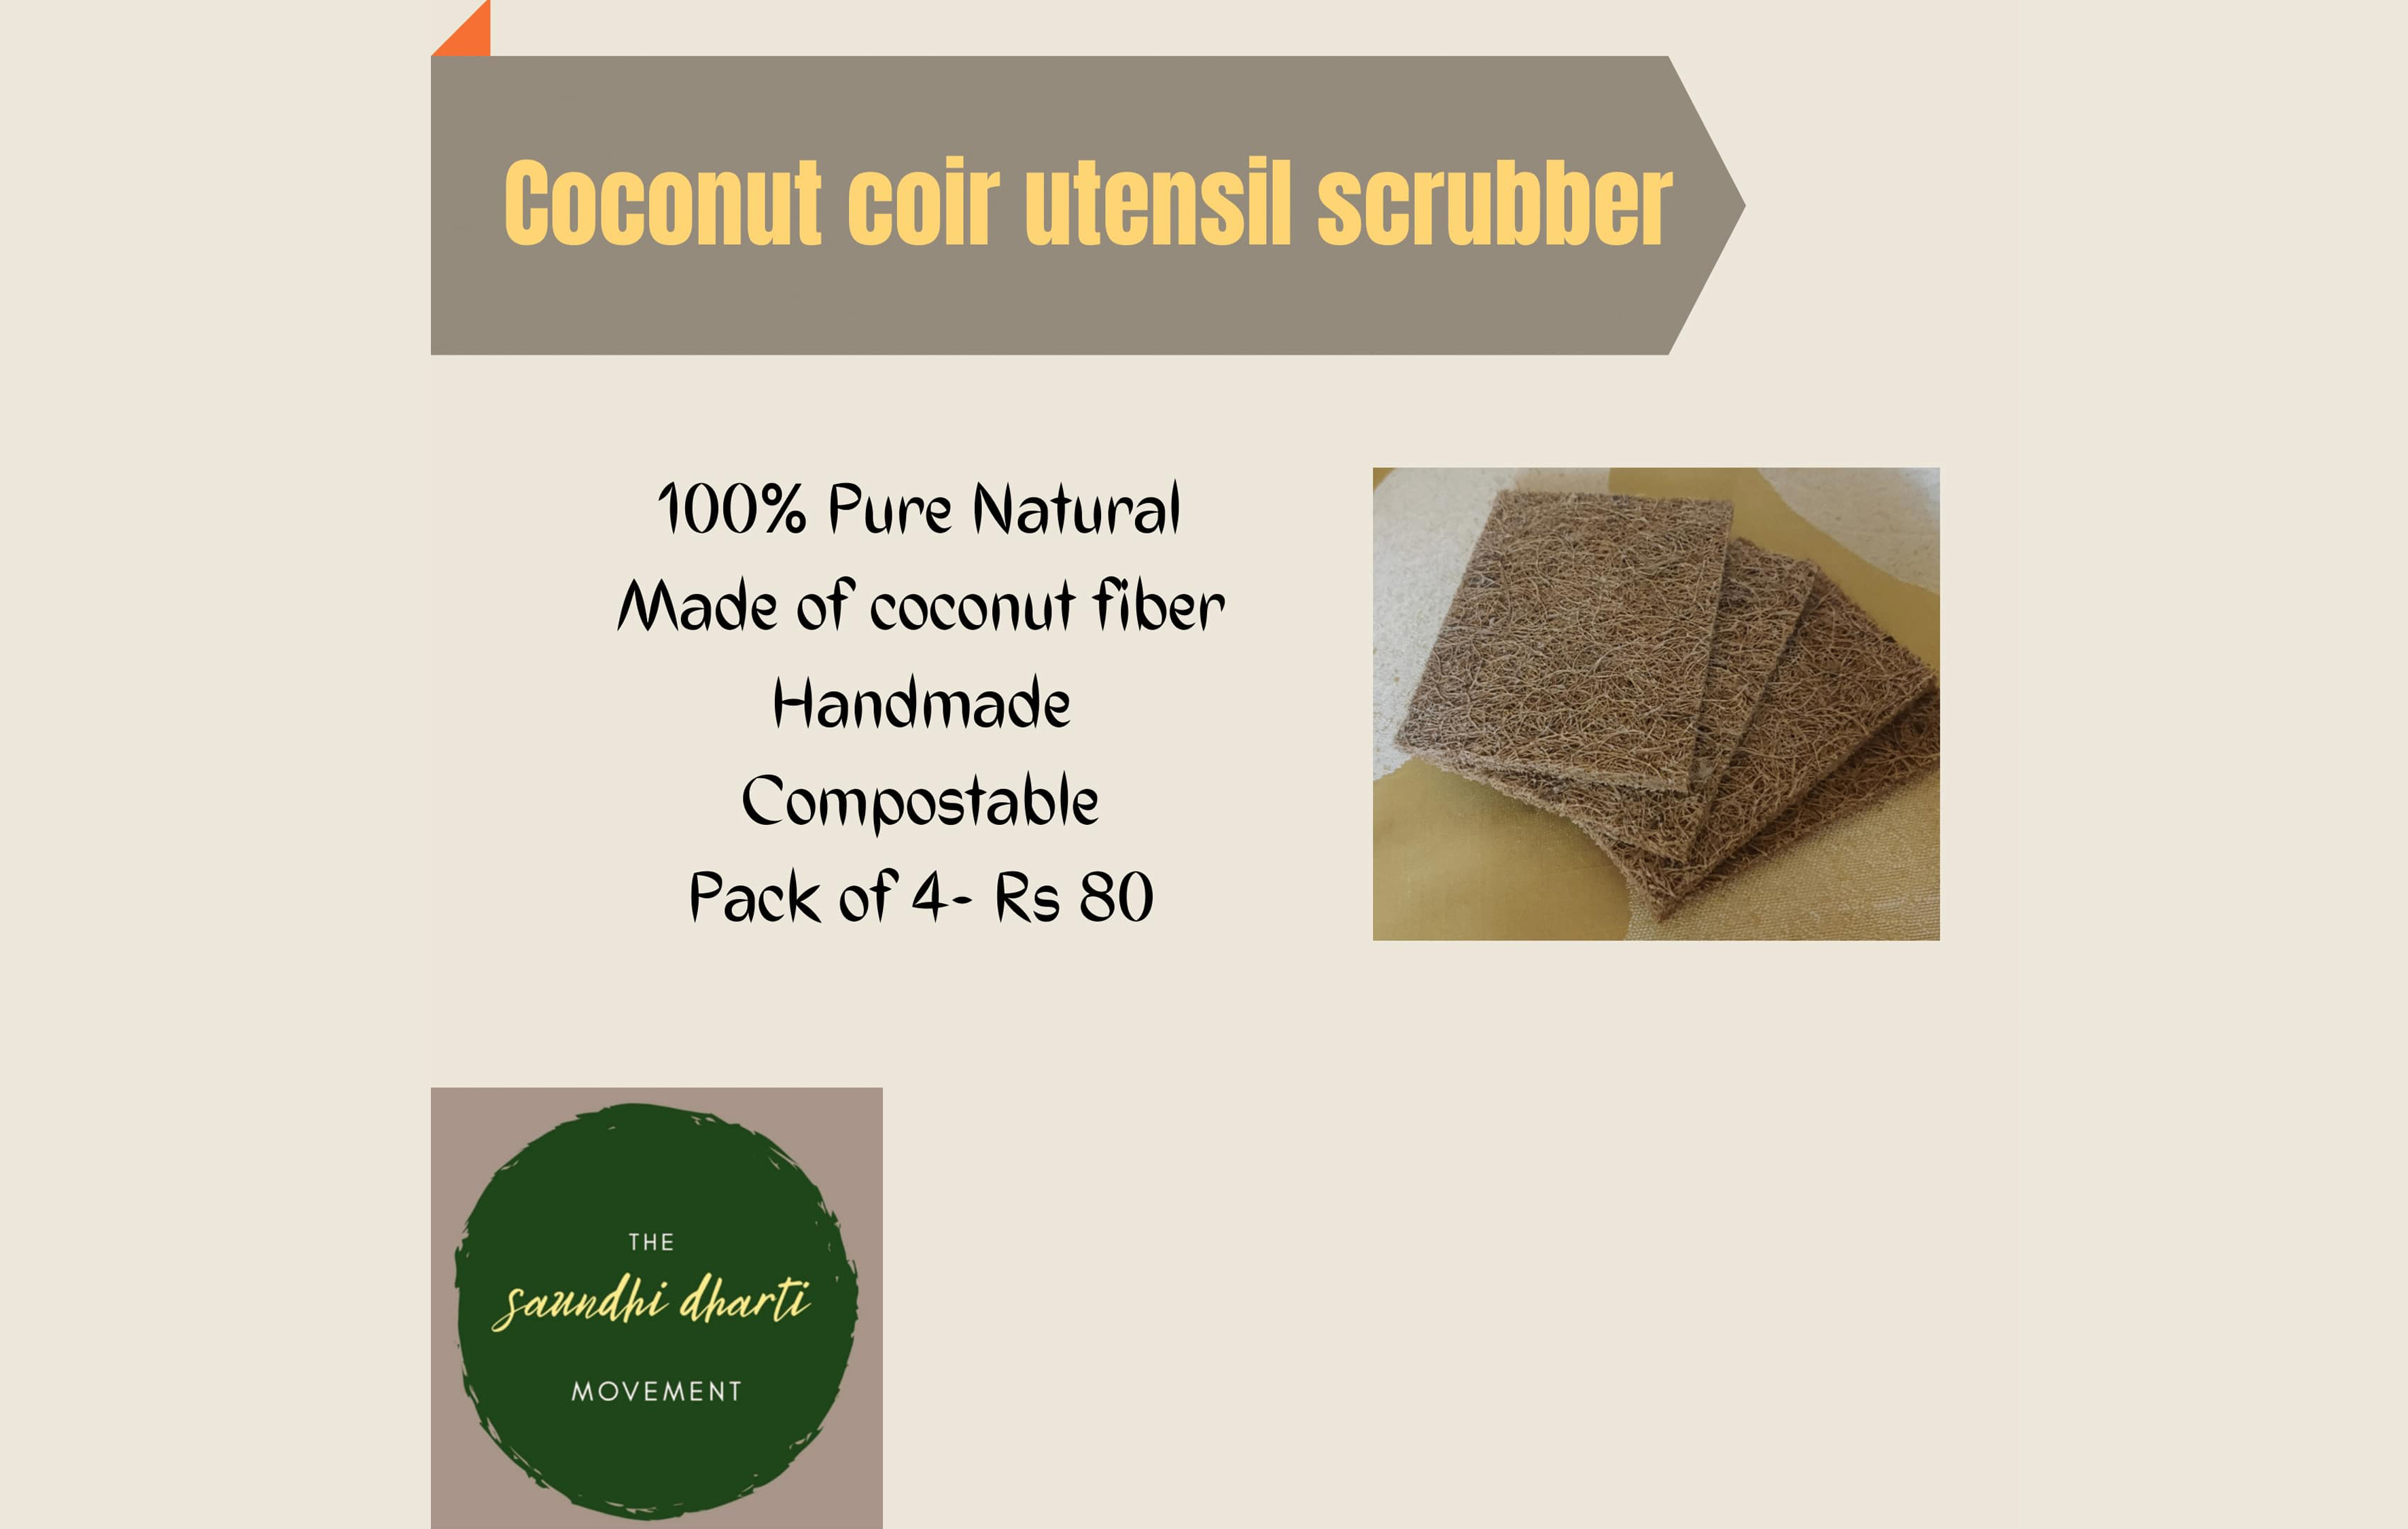 Coconut Coir Utensil Scrubber, 9205369196